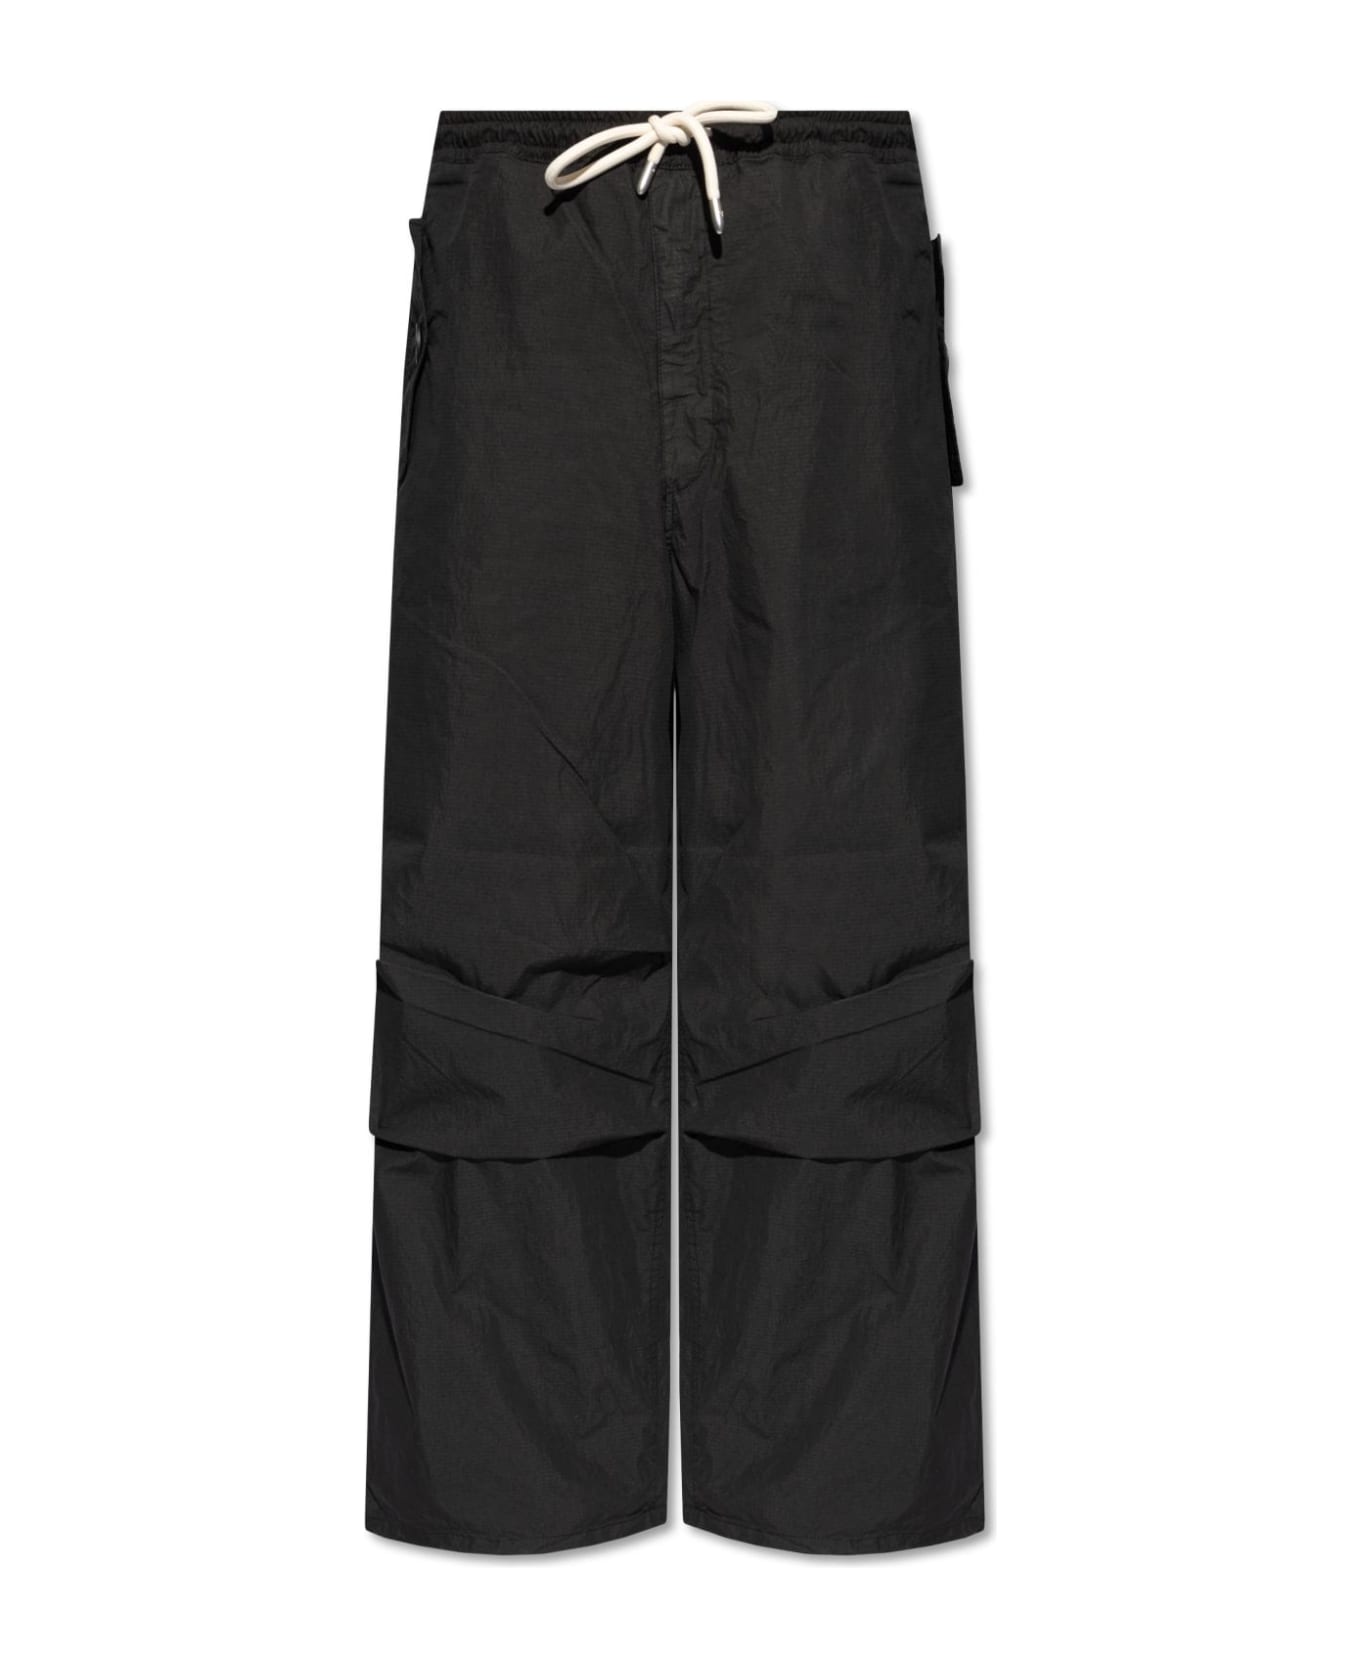 Emporio Armani Wide-leg Trousers - Black